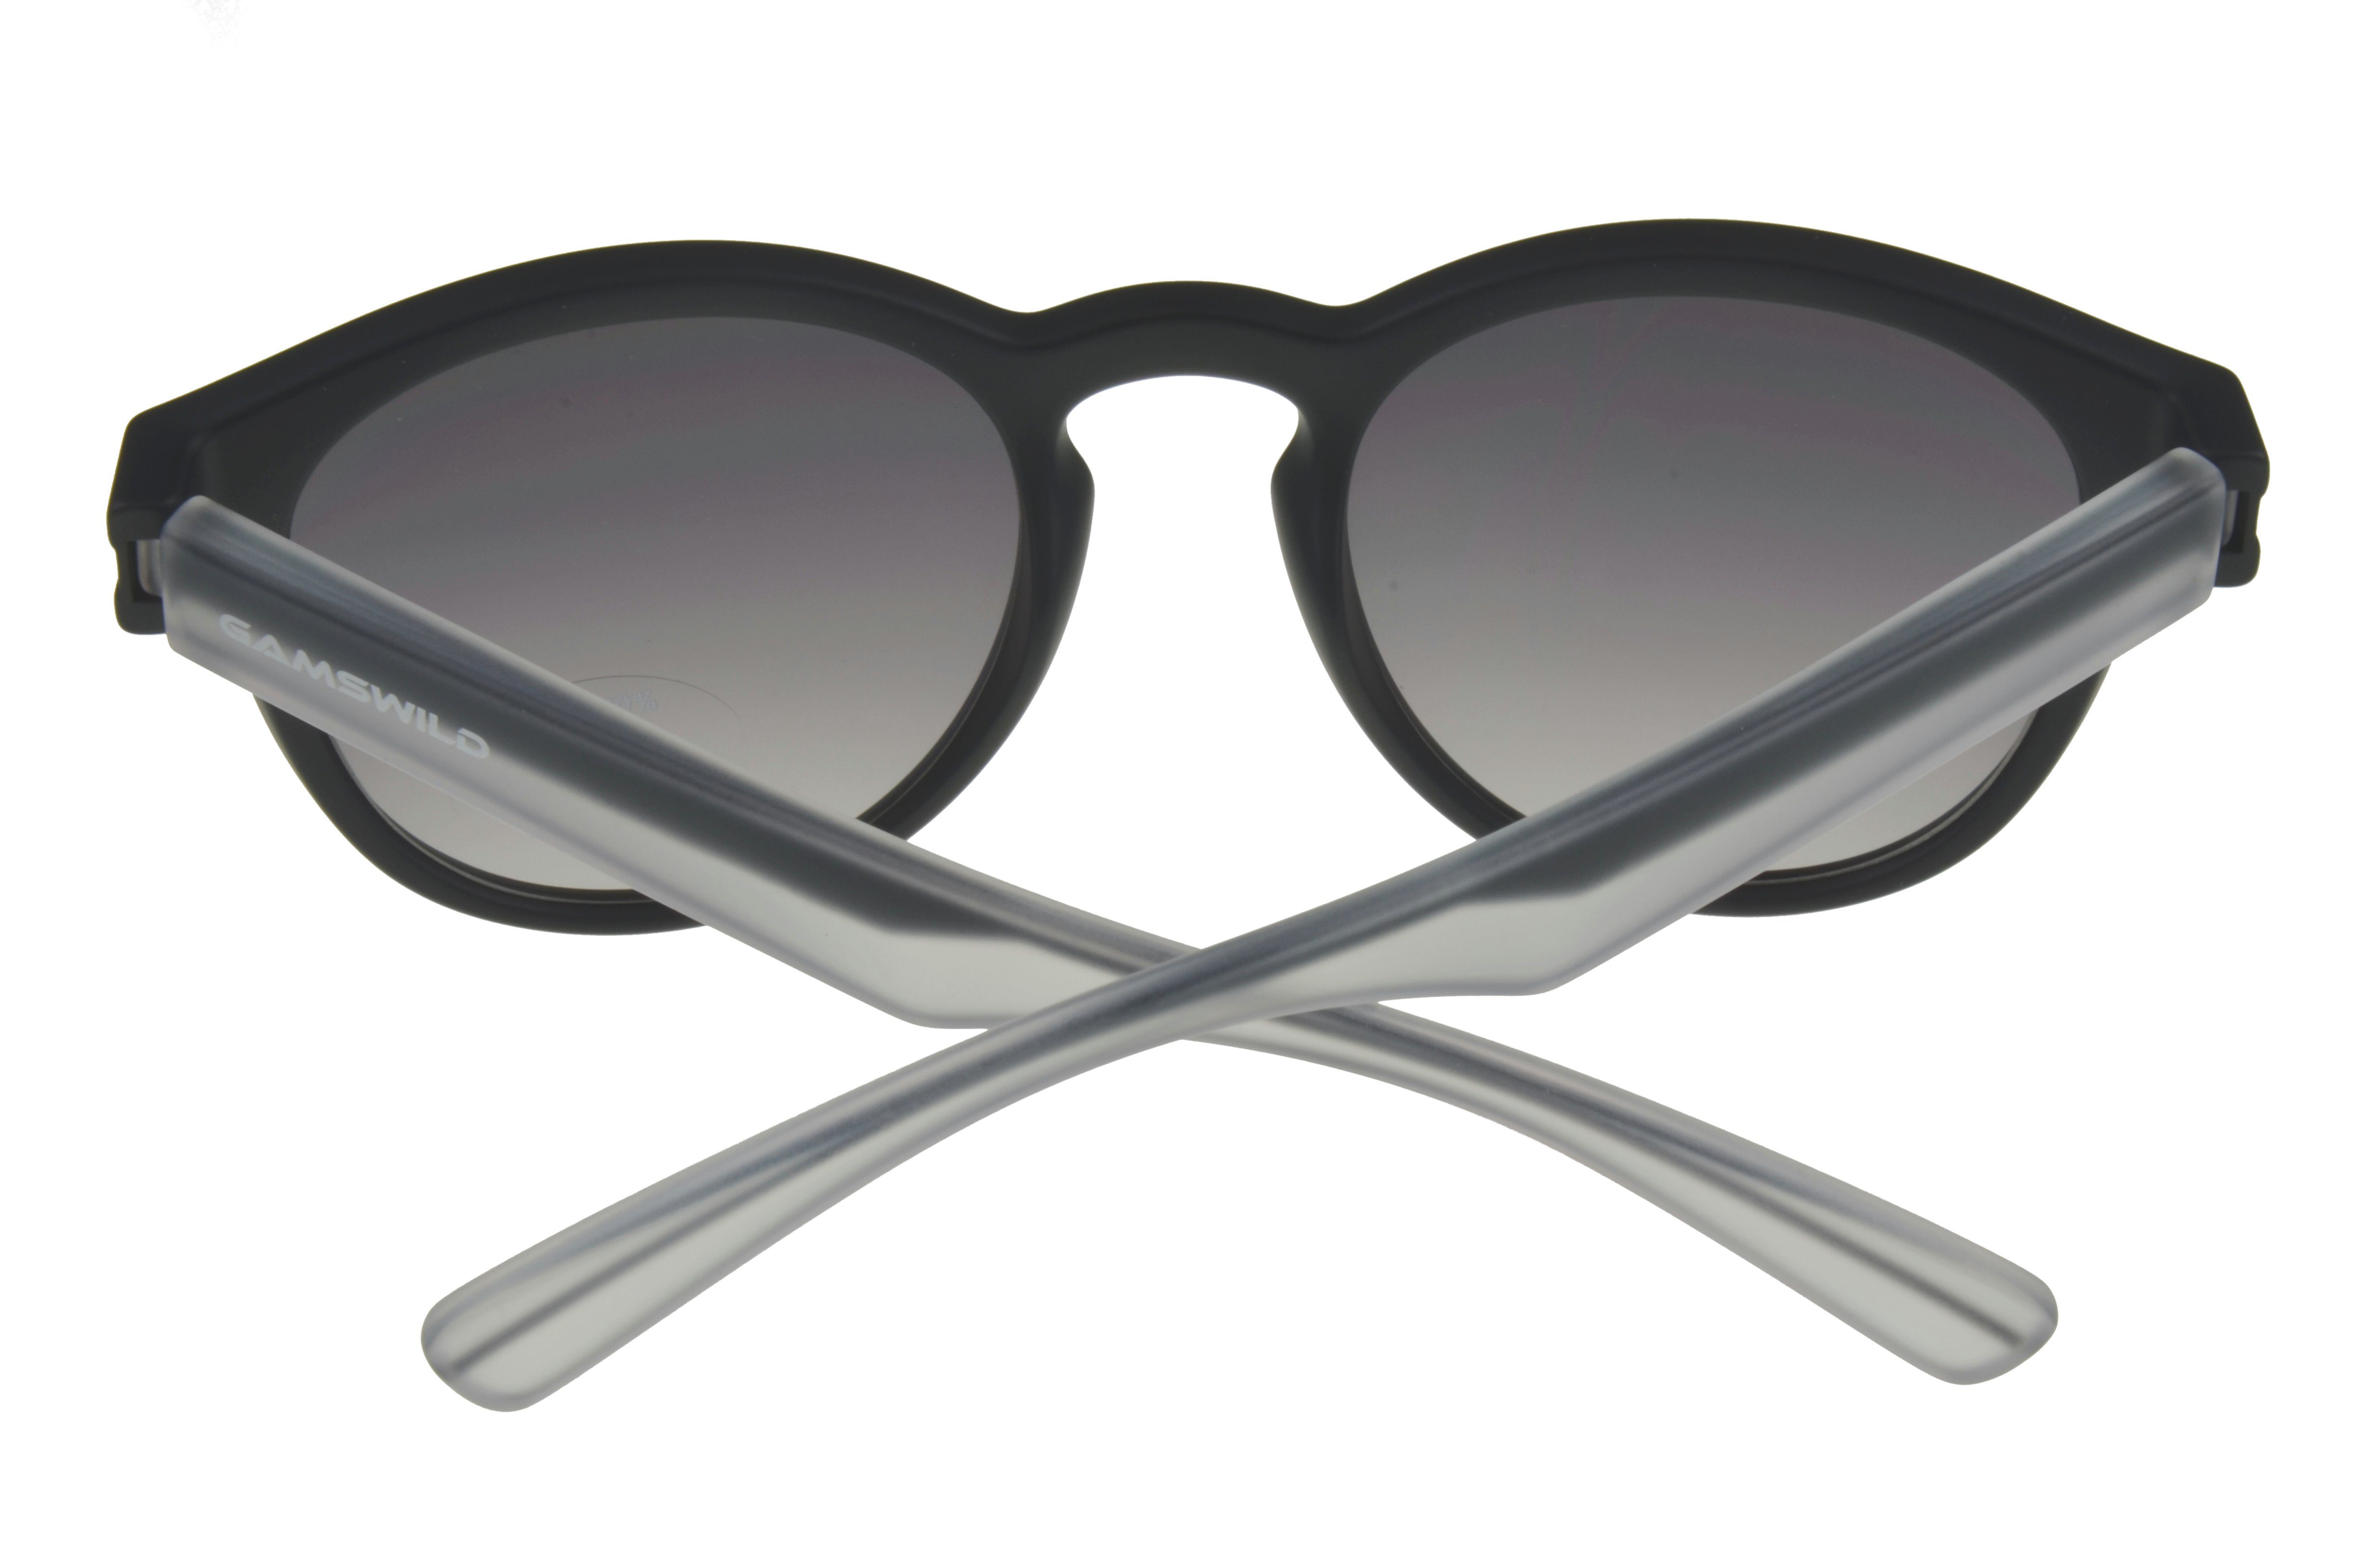 Bügel halbtransparenter Unisex Herren Sonnenbrille schwarz GAMSSTYLE Gamswild WM7525 Damen Modebrille